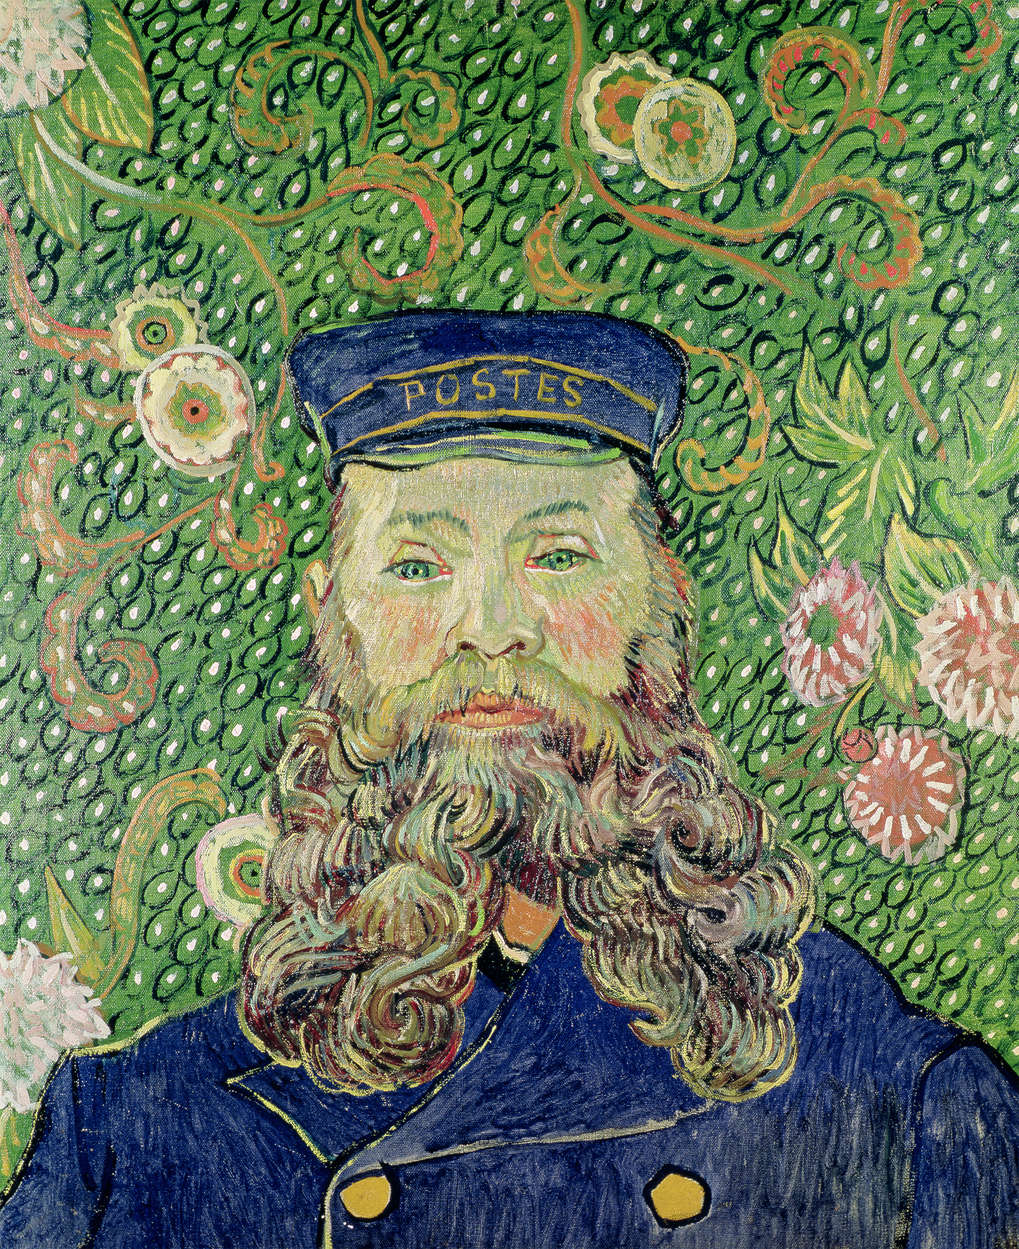             Photo wallpaper "Portrait of the letter carrier Joseph Roulin" by Vincent van Gogh
        